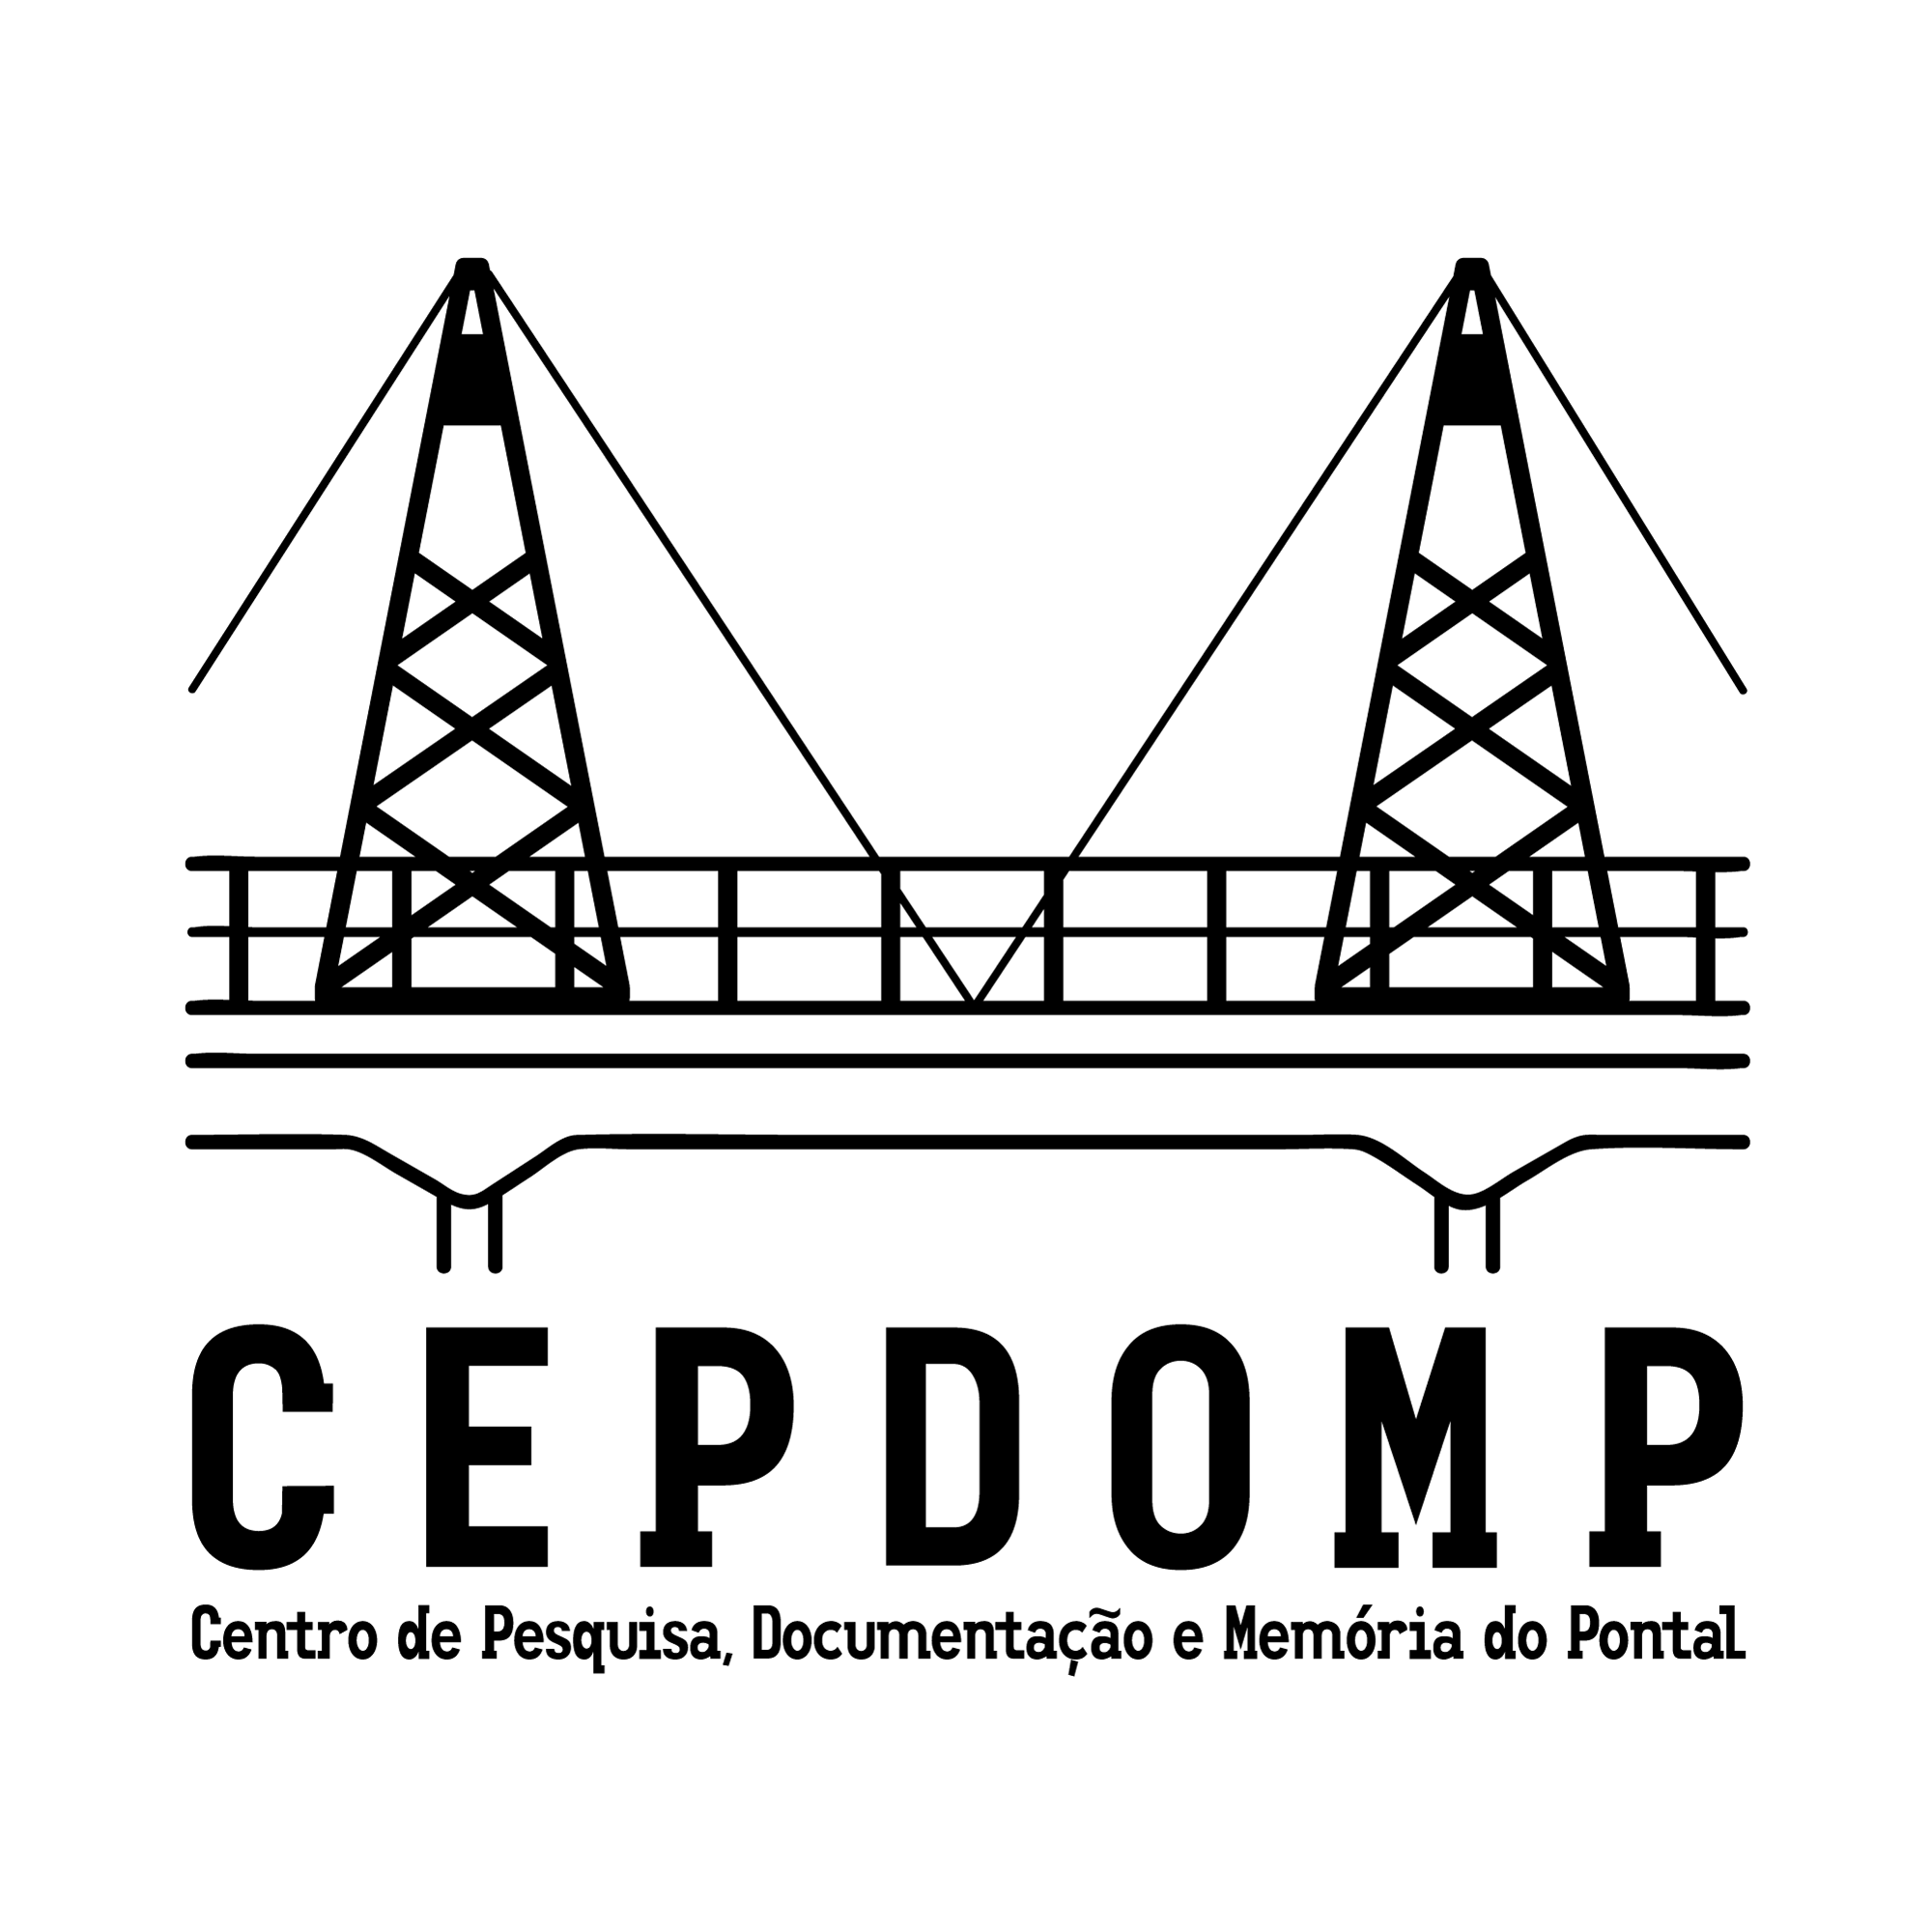 Imagem de fundo branco, com nome do Cepdomp e símbolo na cor preta